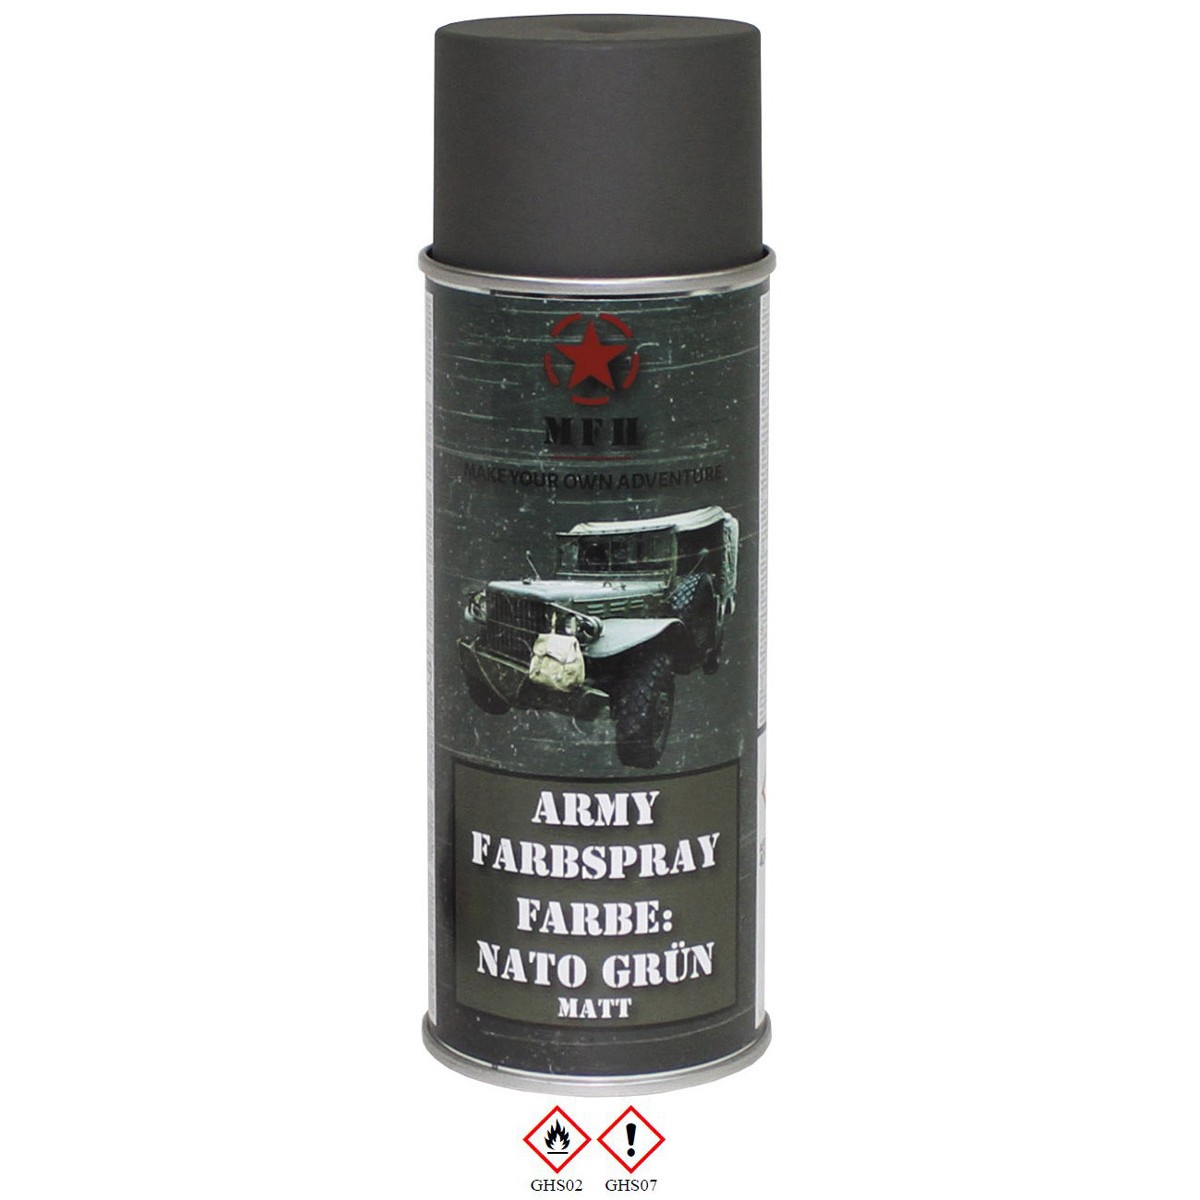 Farbspray, "Army" NATO GRÜN, matt, 400 ml